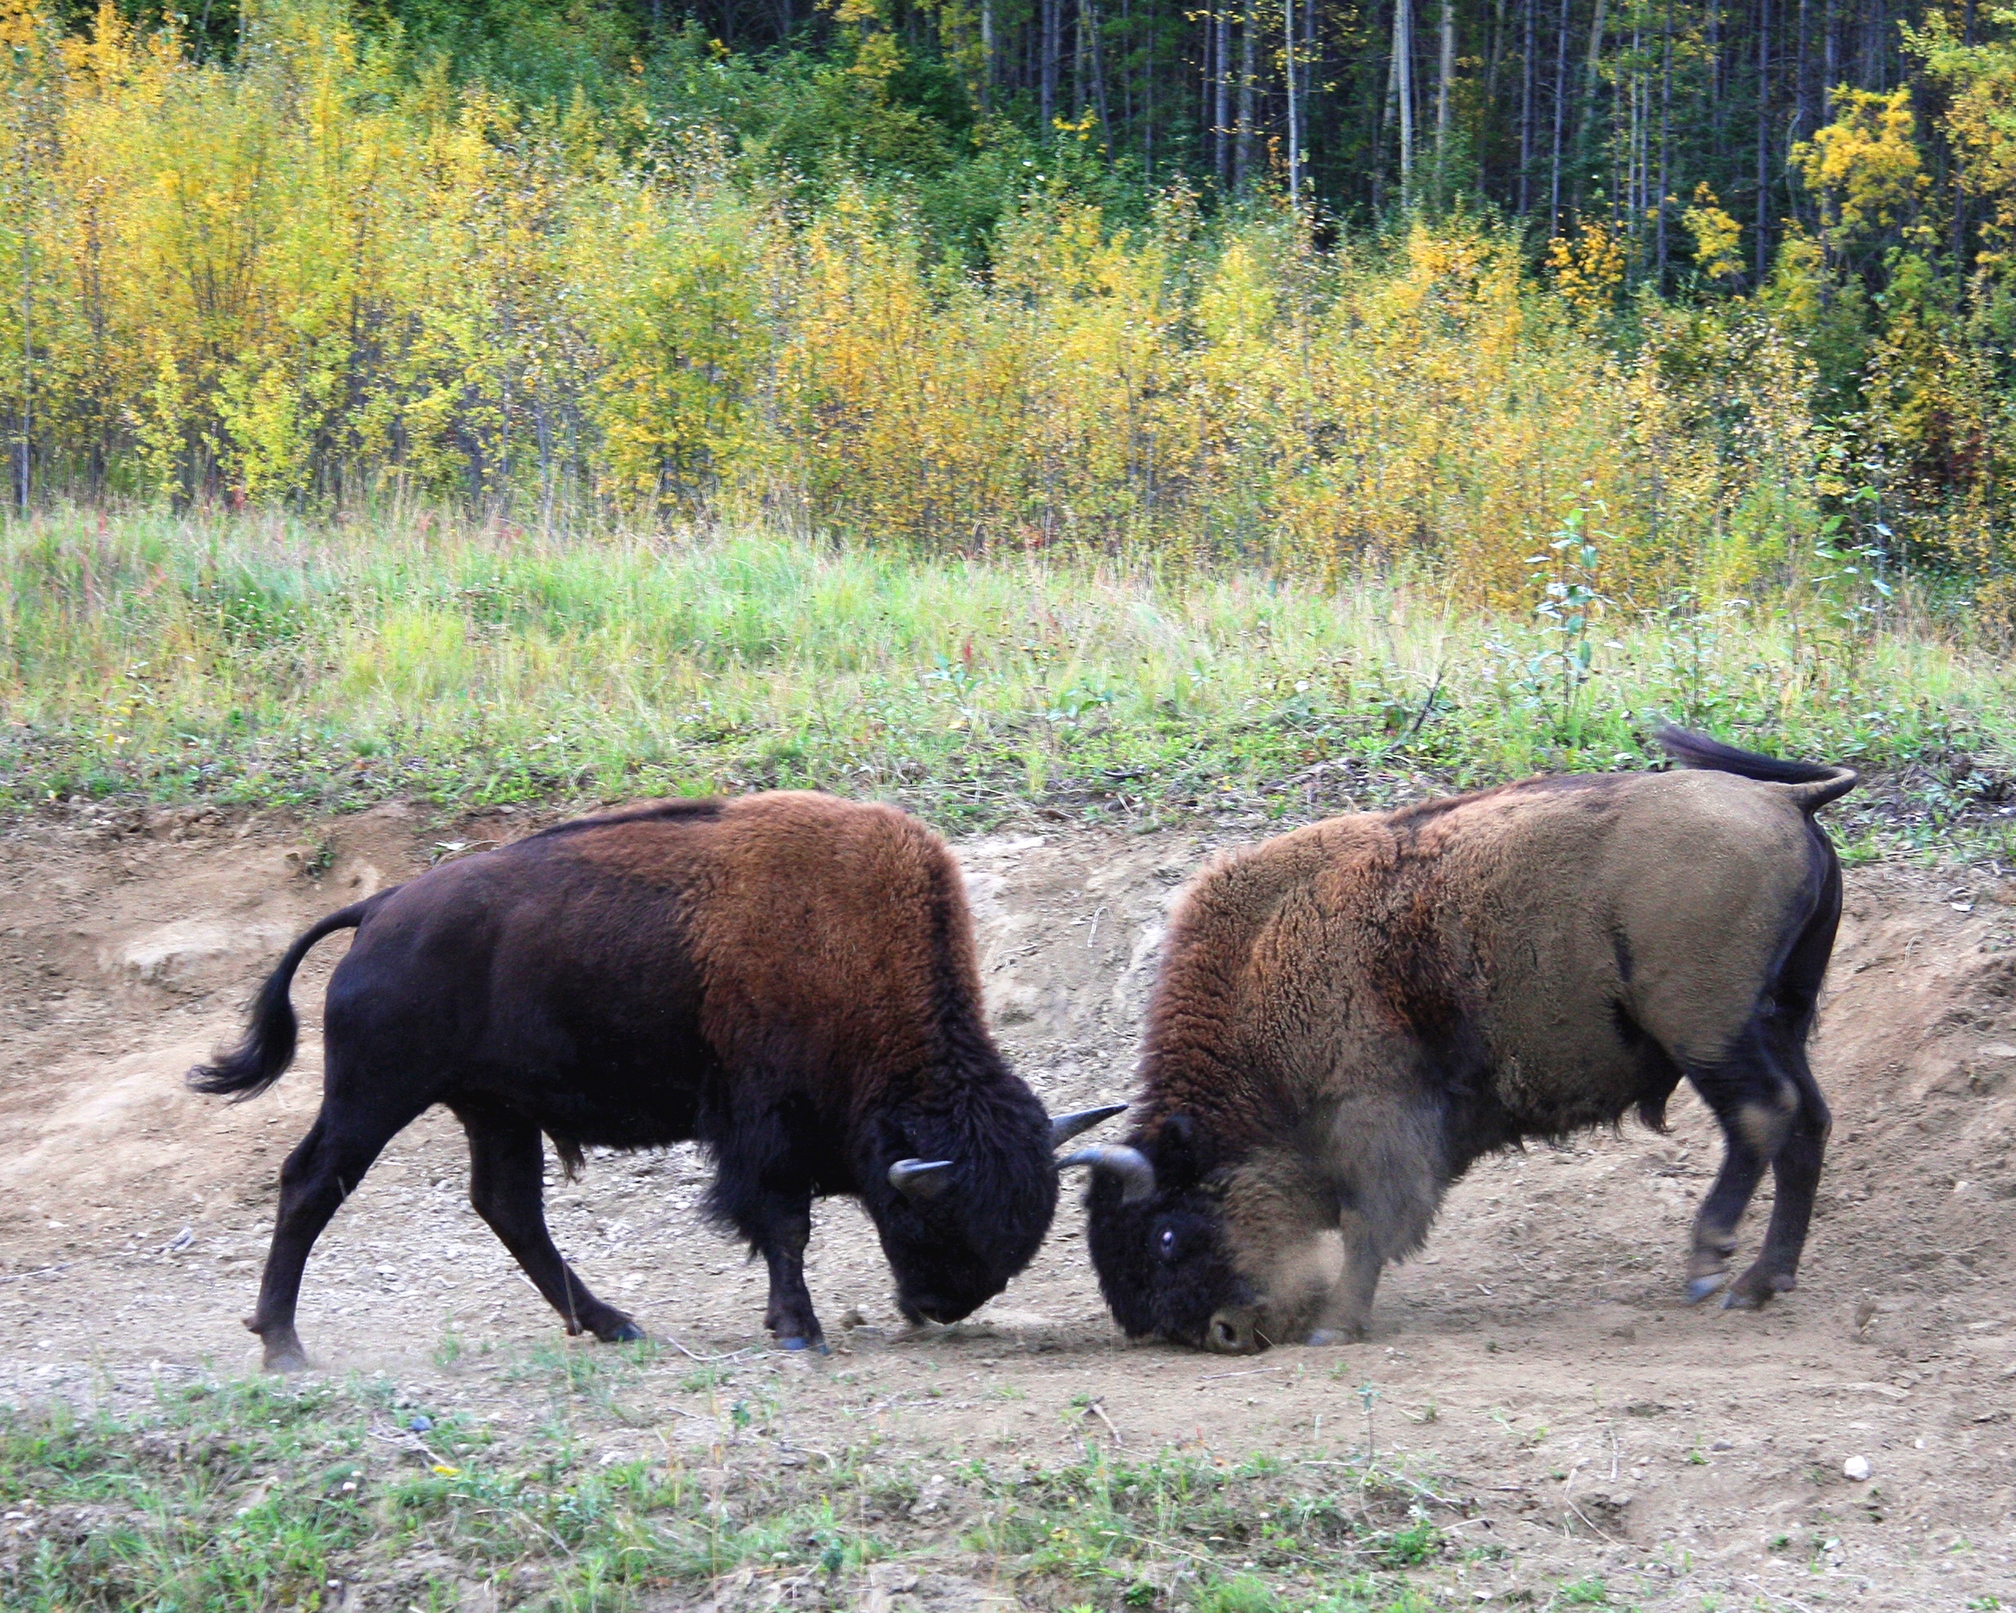 Battling bison courtesy of Ed Williams